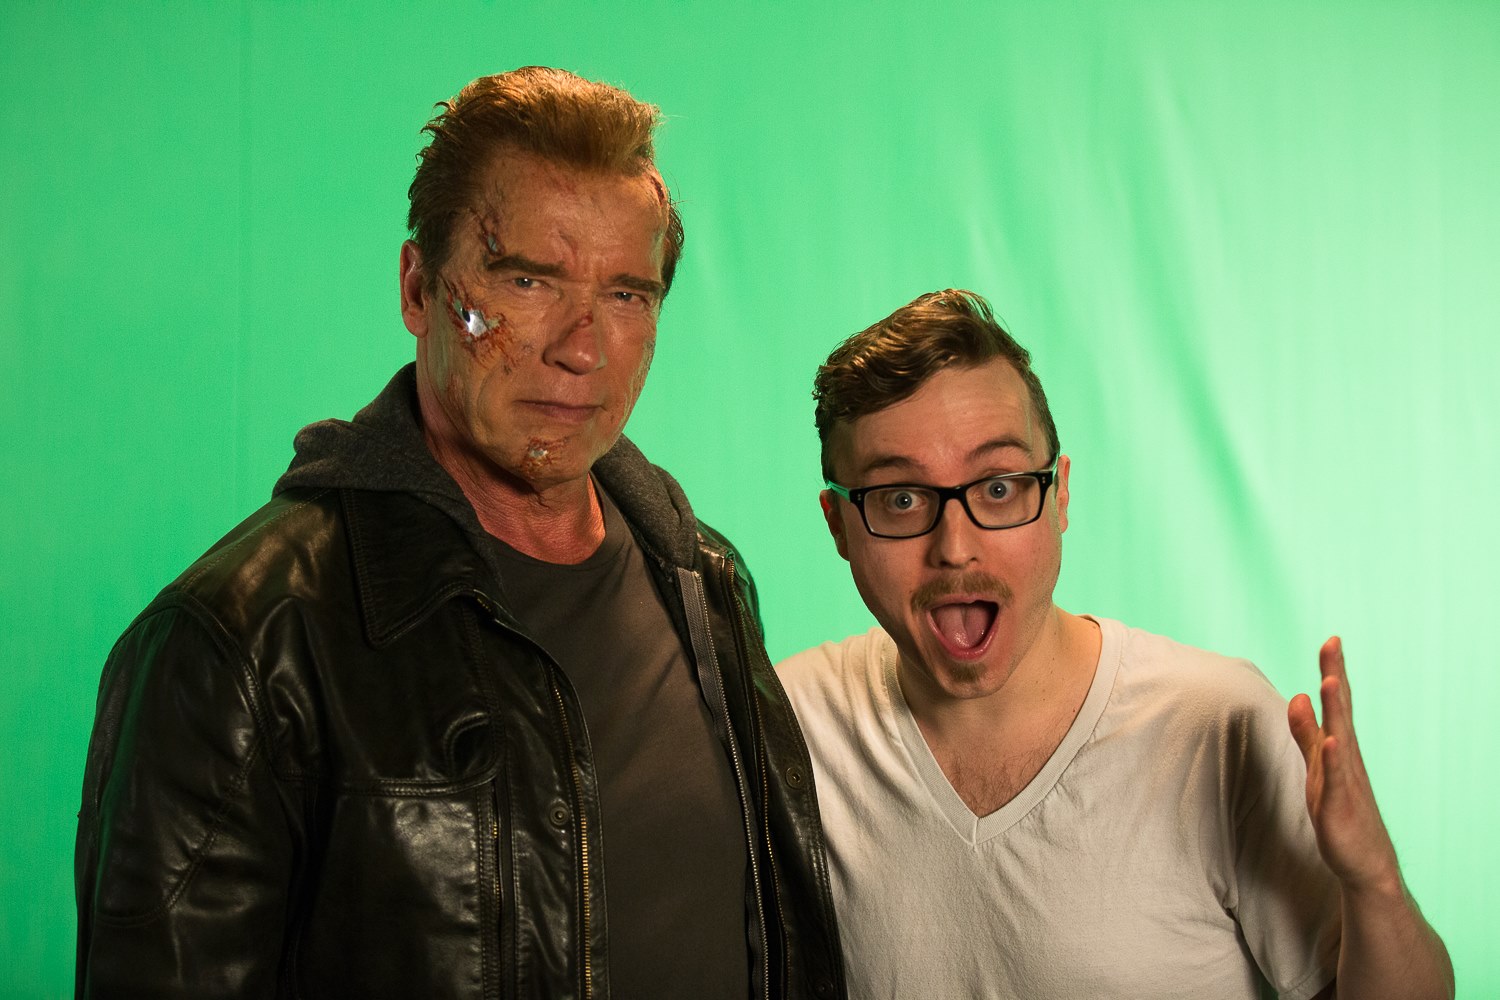 Terminator and I